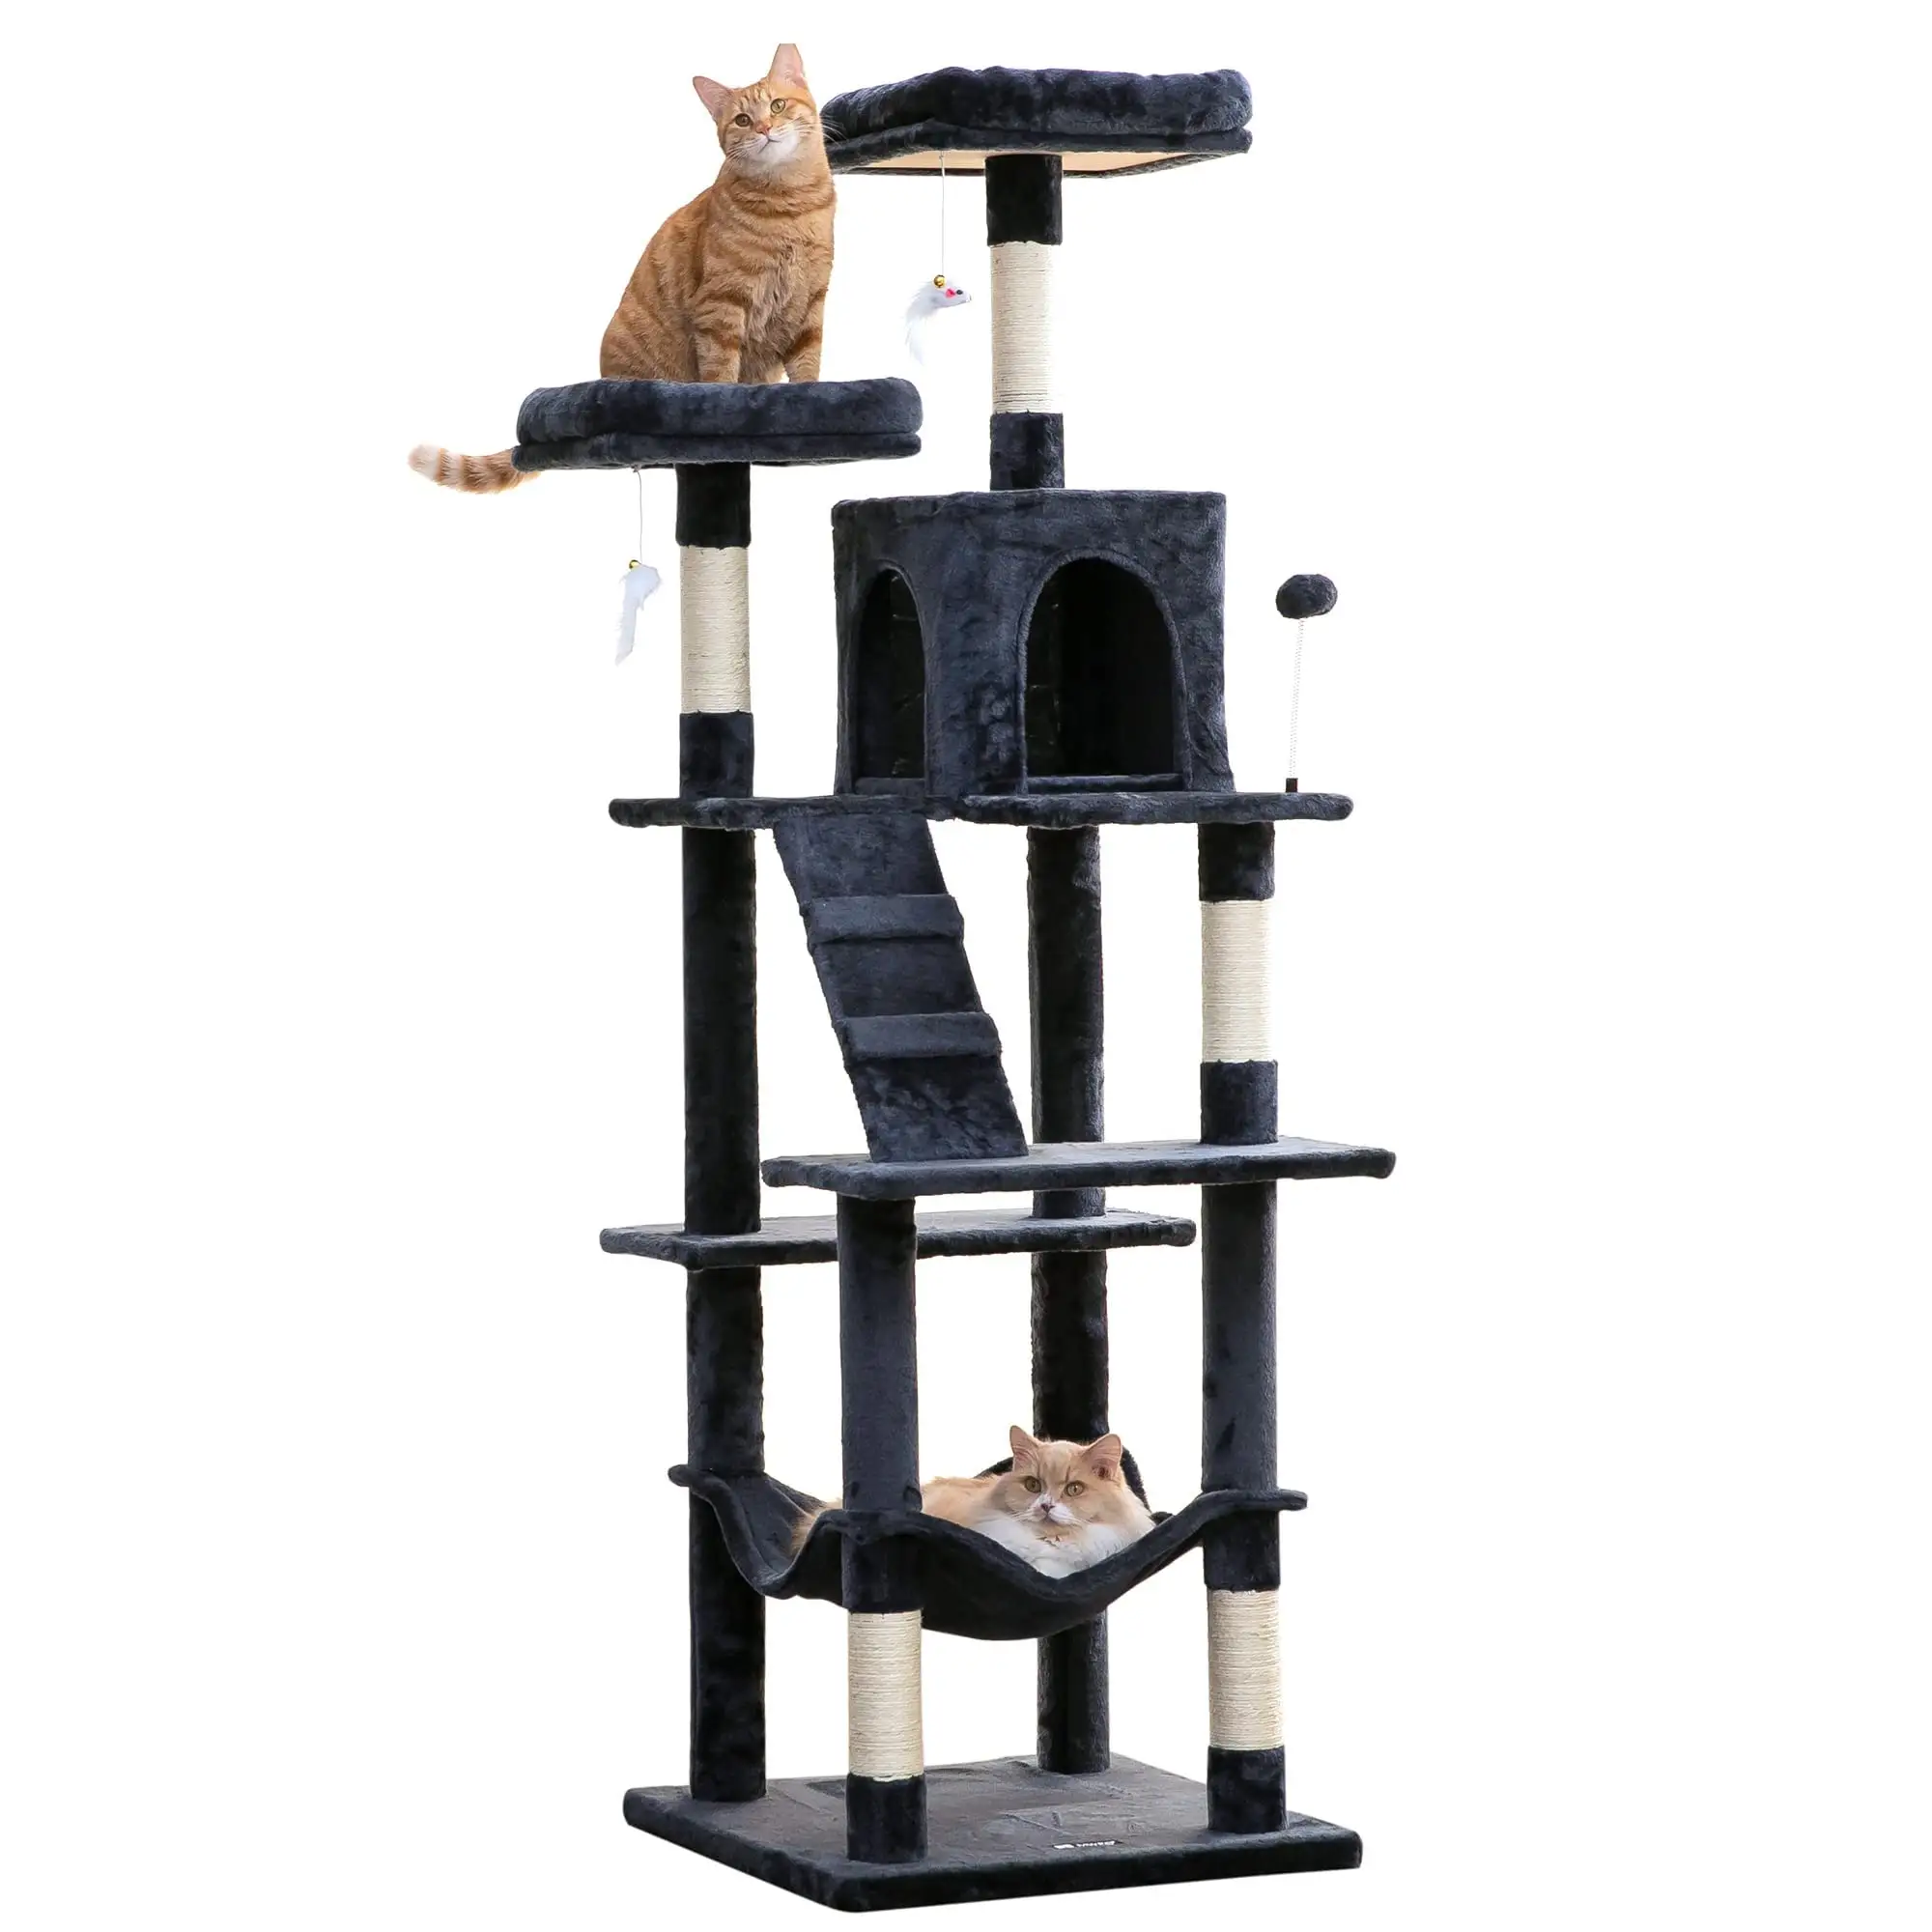 Ontwerp Kattenbomen Voor Grote Katten Leveren Kwaliteit Groothandel Modekarton Aangepaste Huisdierenproducten Duurzame Toren Hout Boom Kat